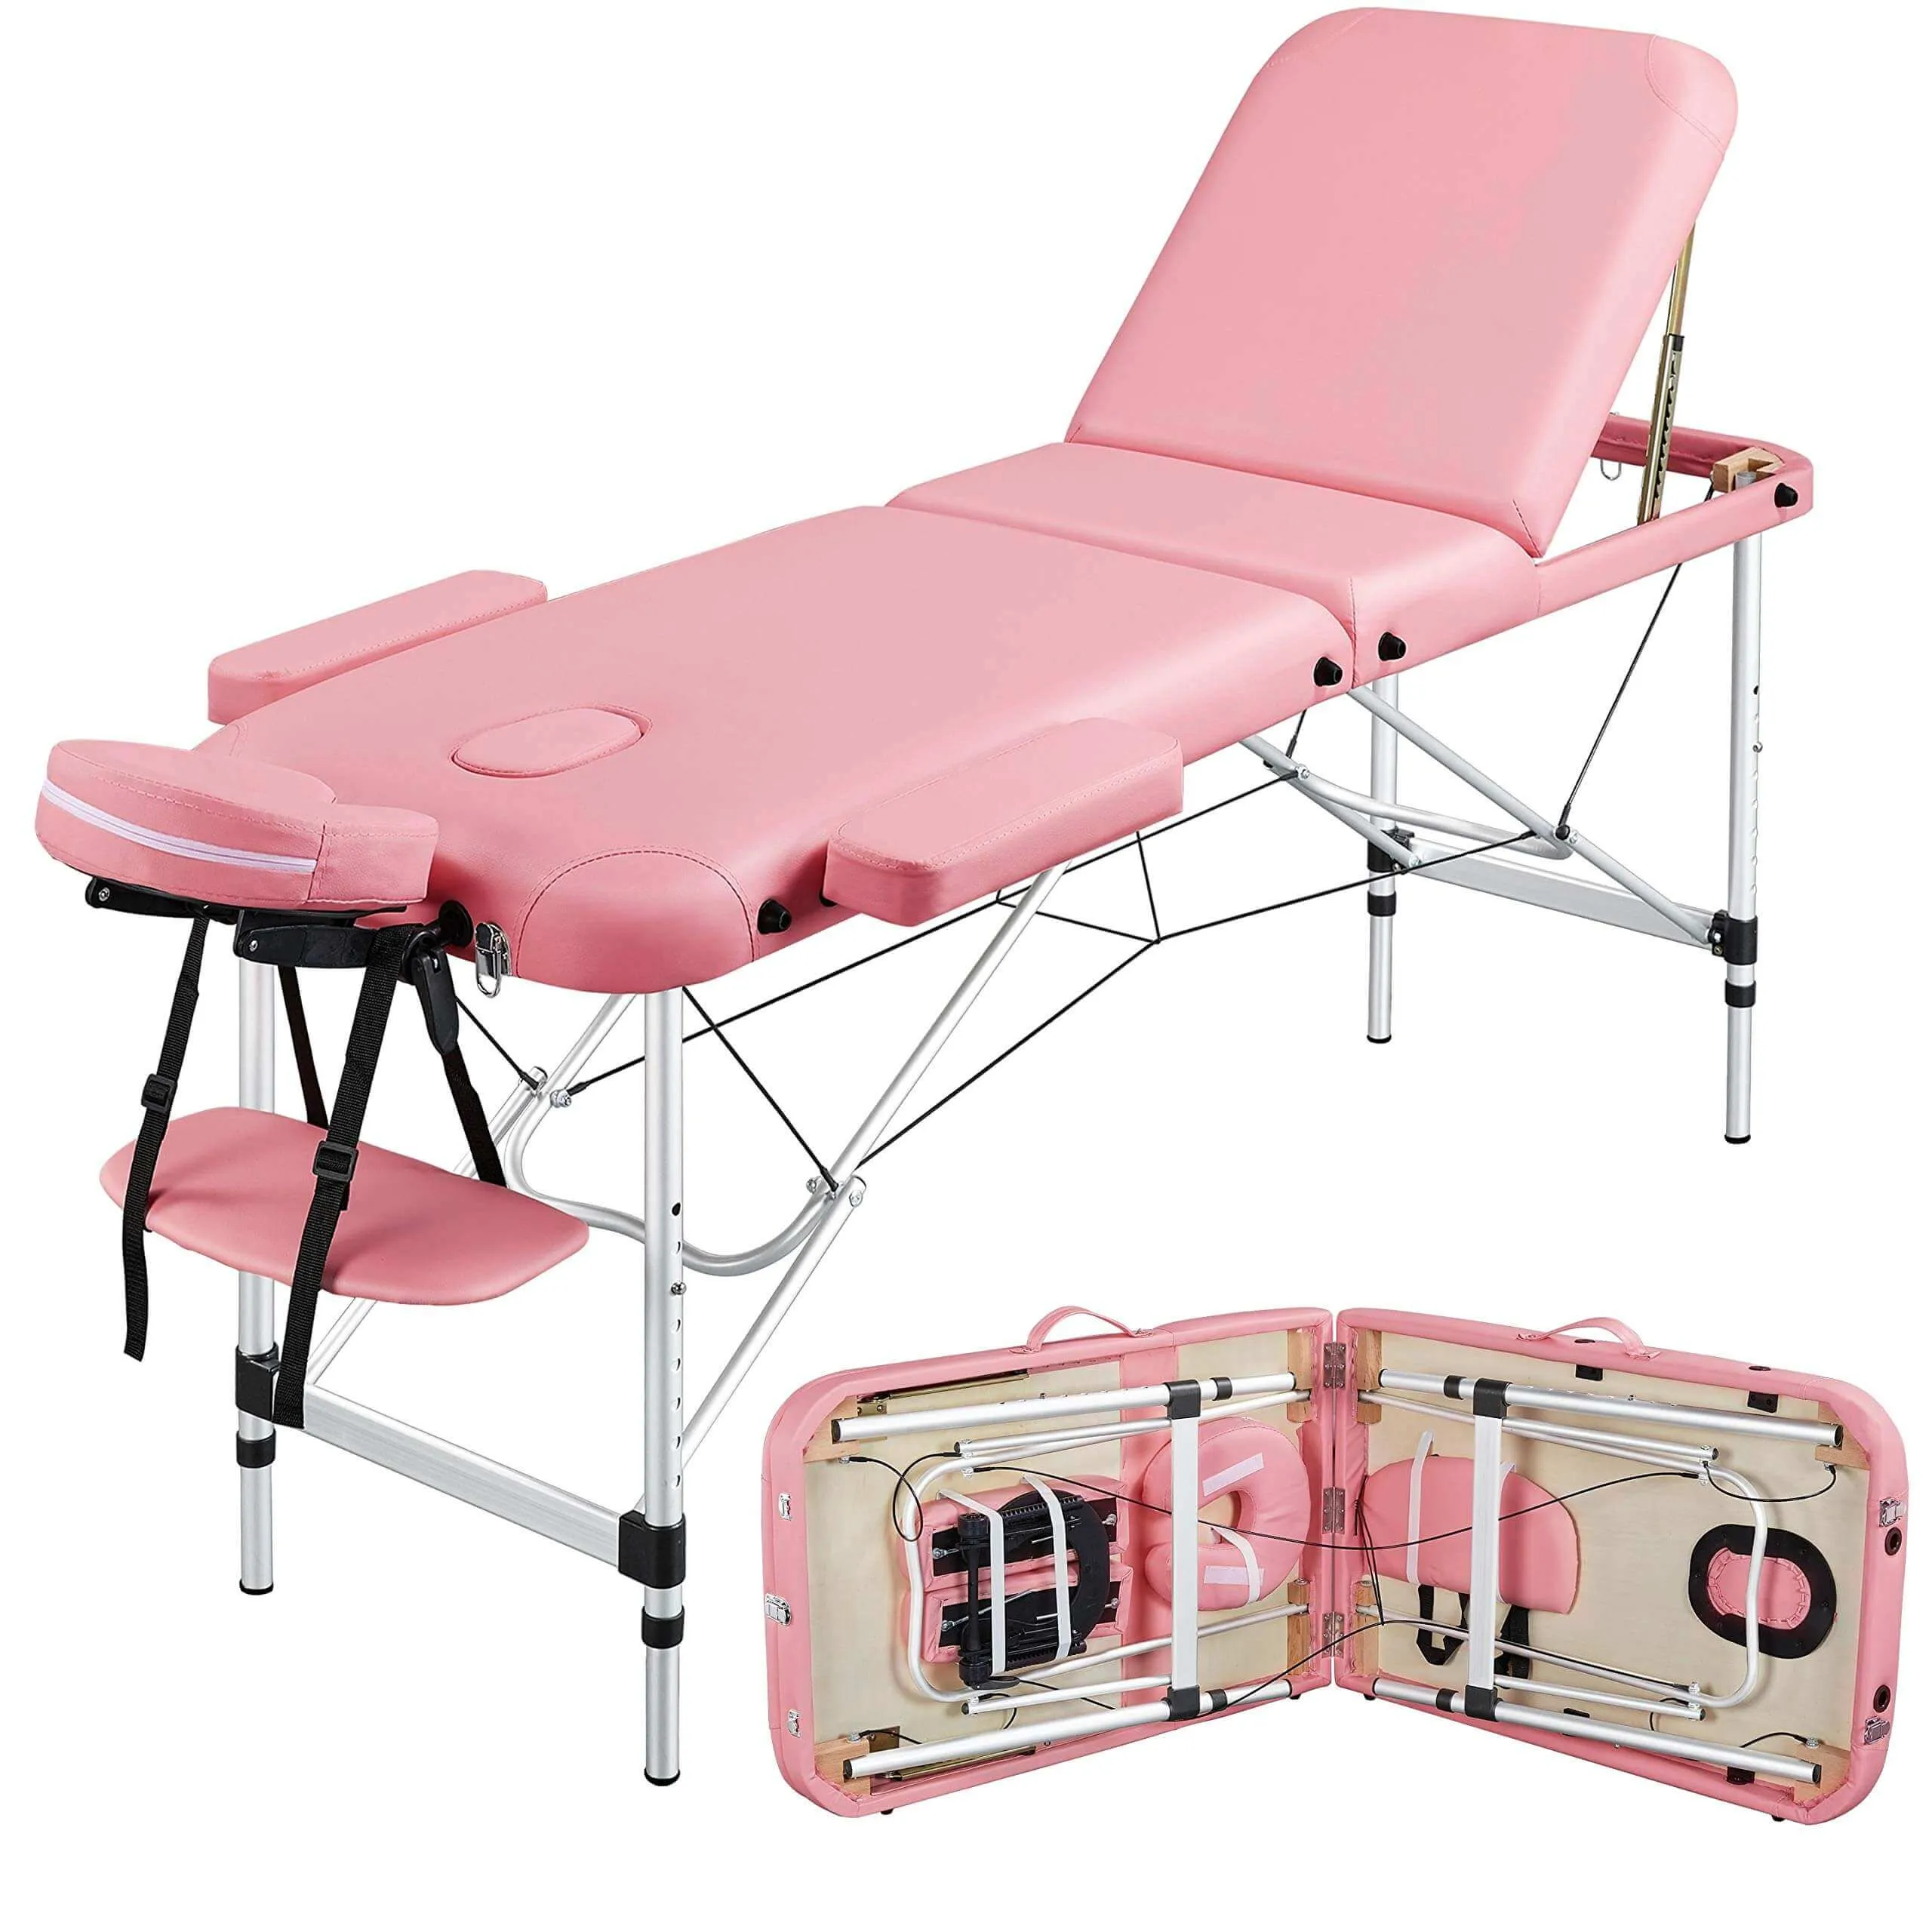 1pc Lash Extension Bed & 1pc Lash Chair